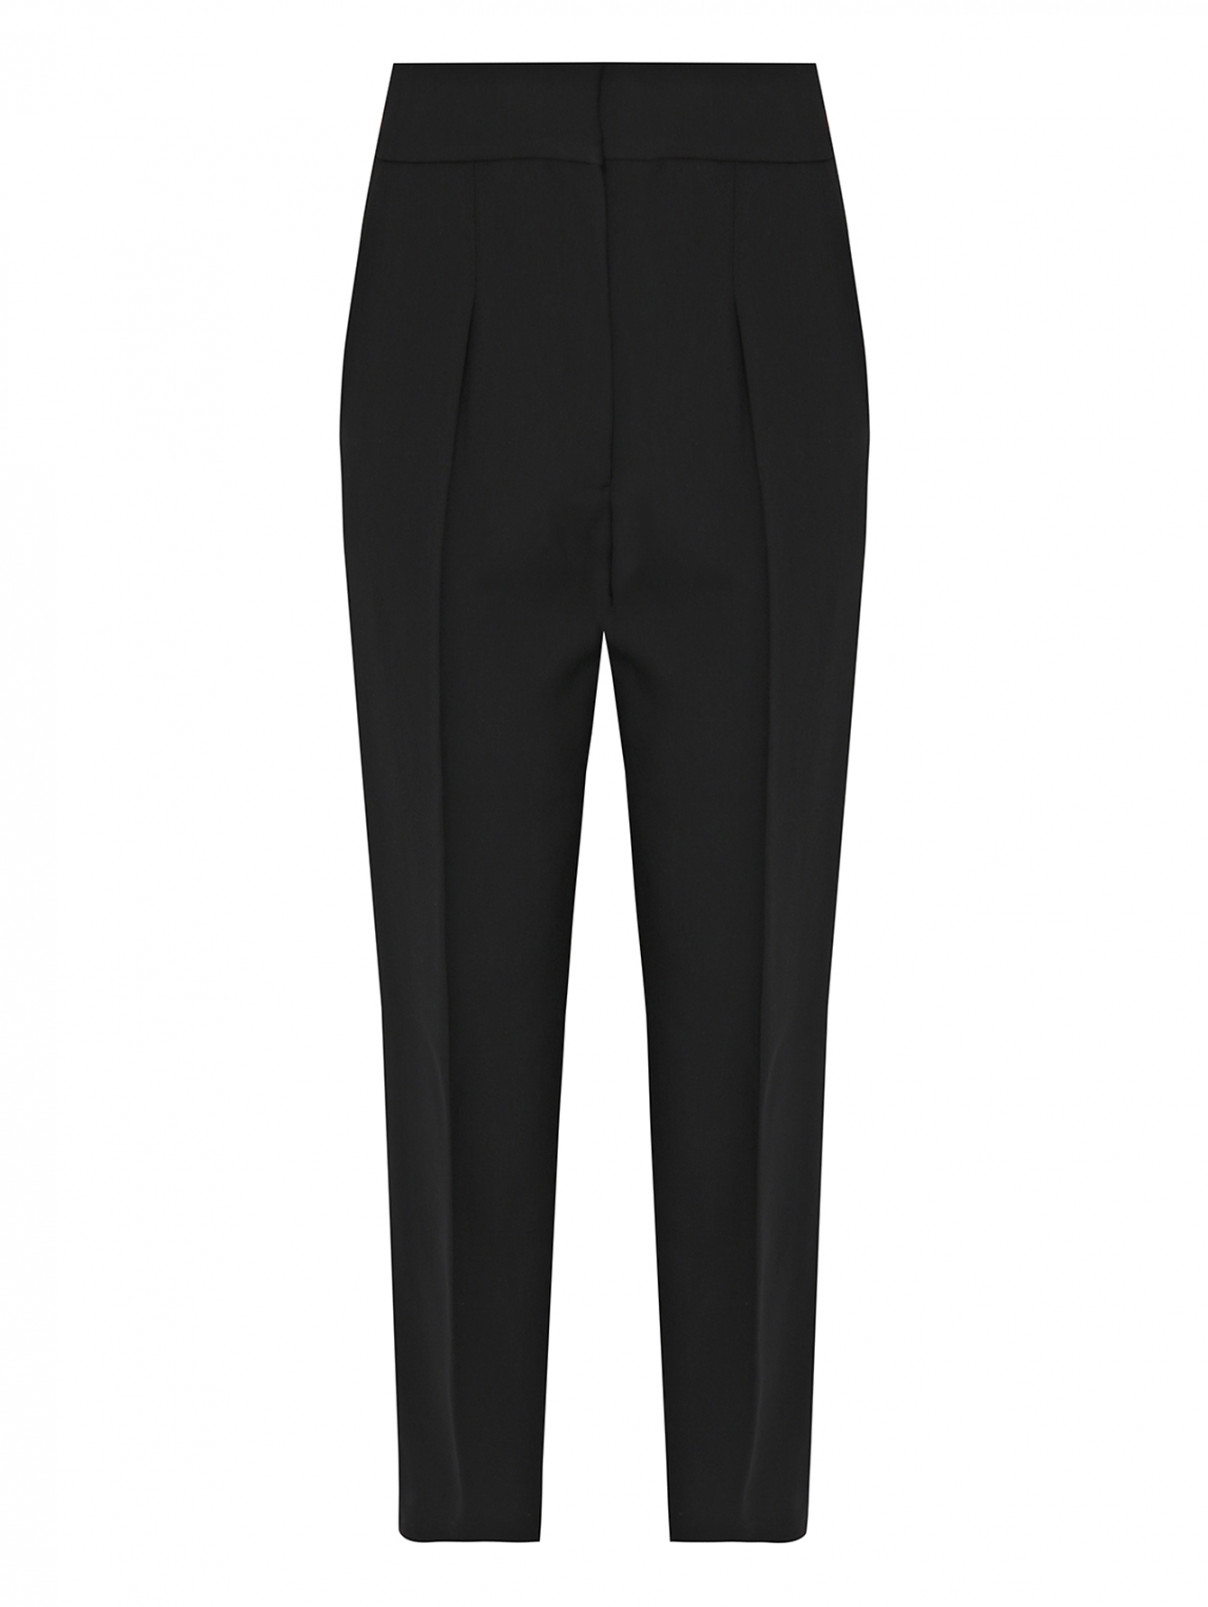 Брюки из хлопка со складками Calvin Klein 205W39NYC  –  Общий вид  – Цвет:  Черный